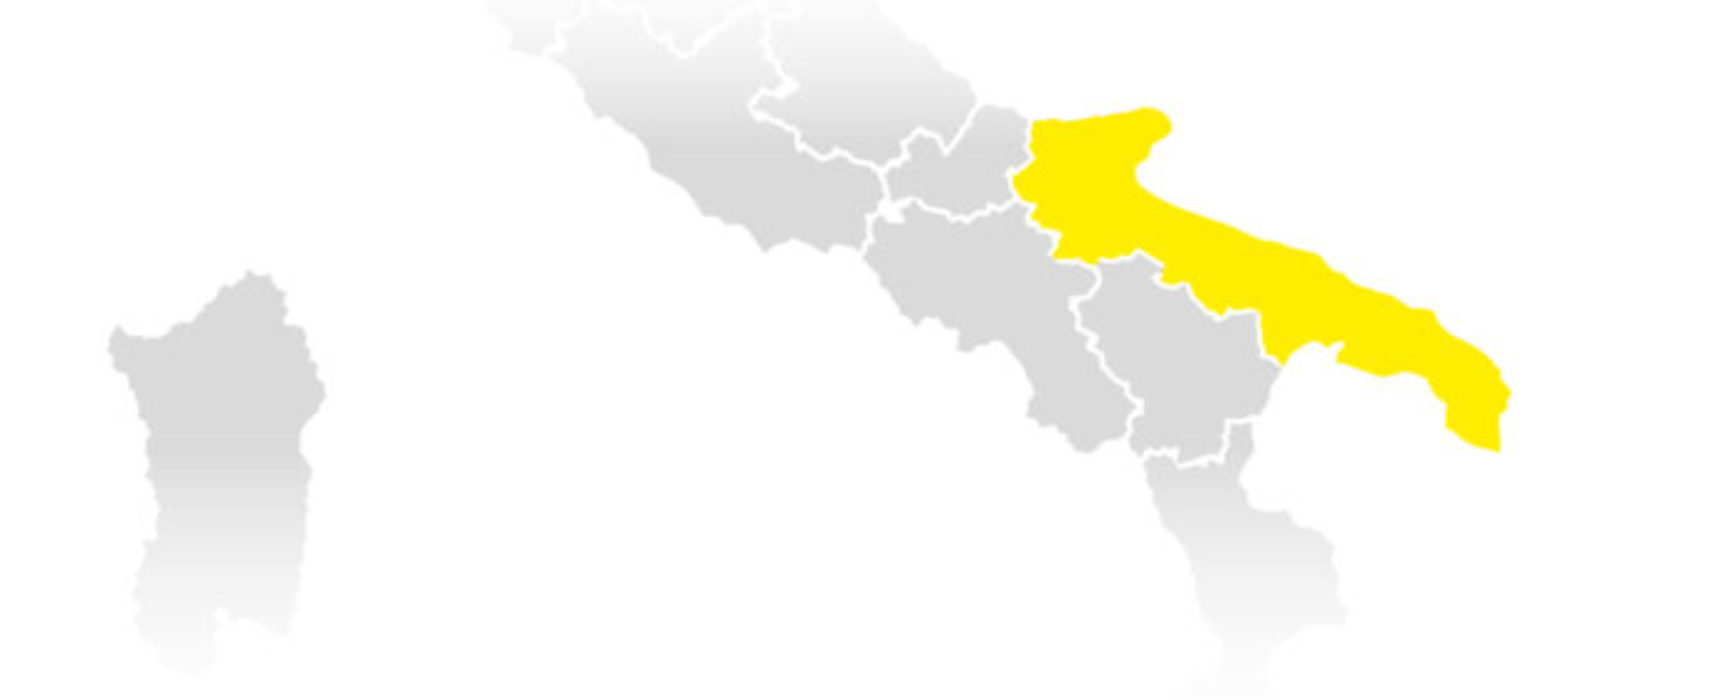 La Puglia entra in zona gialla. Cosa cambia da lunedì 24 gennaio